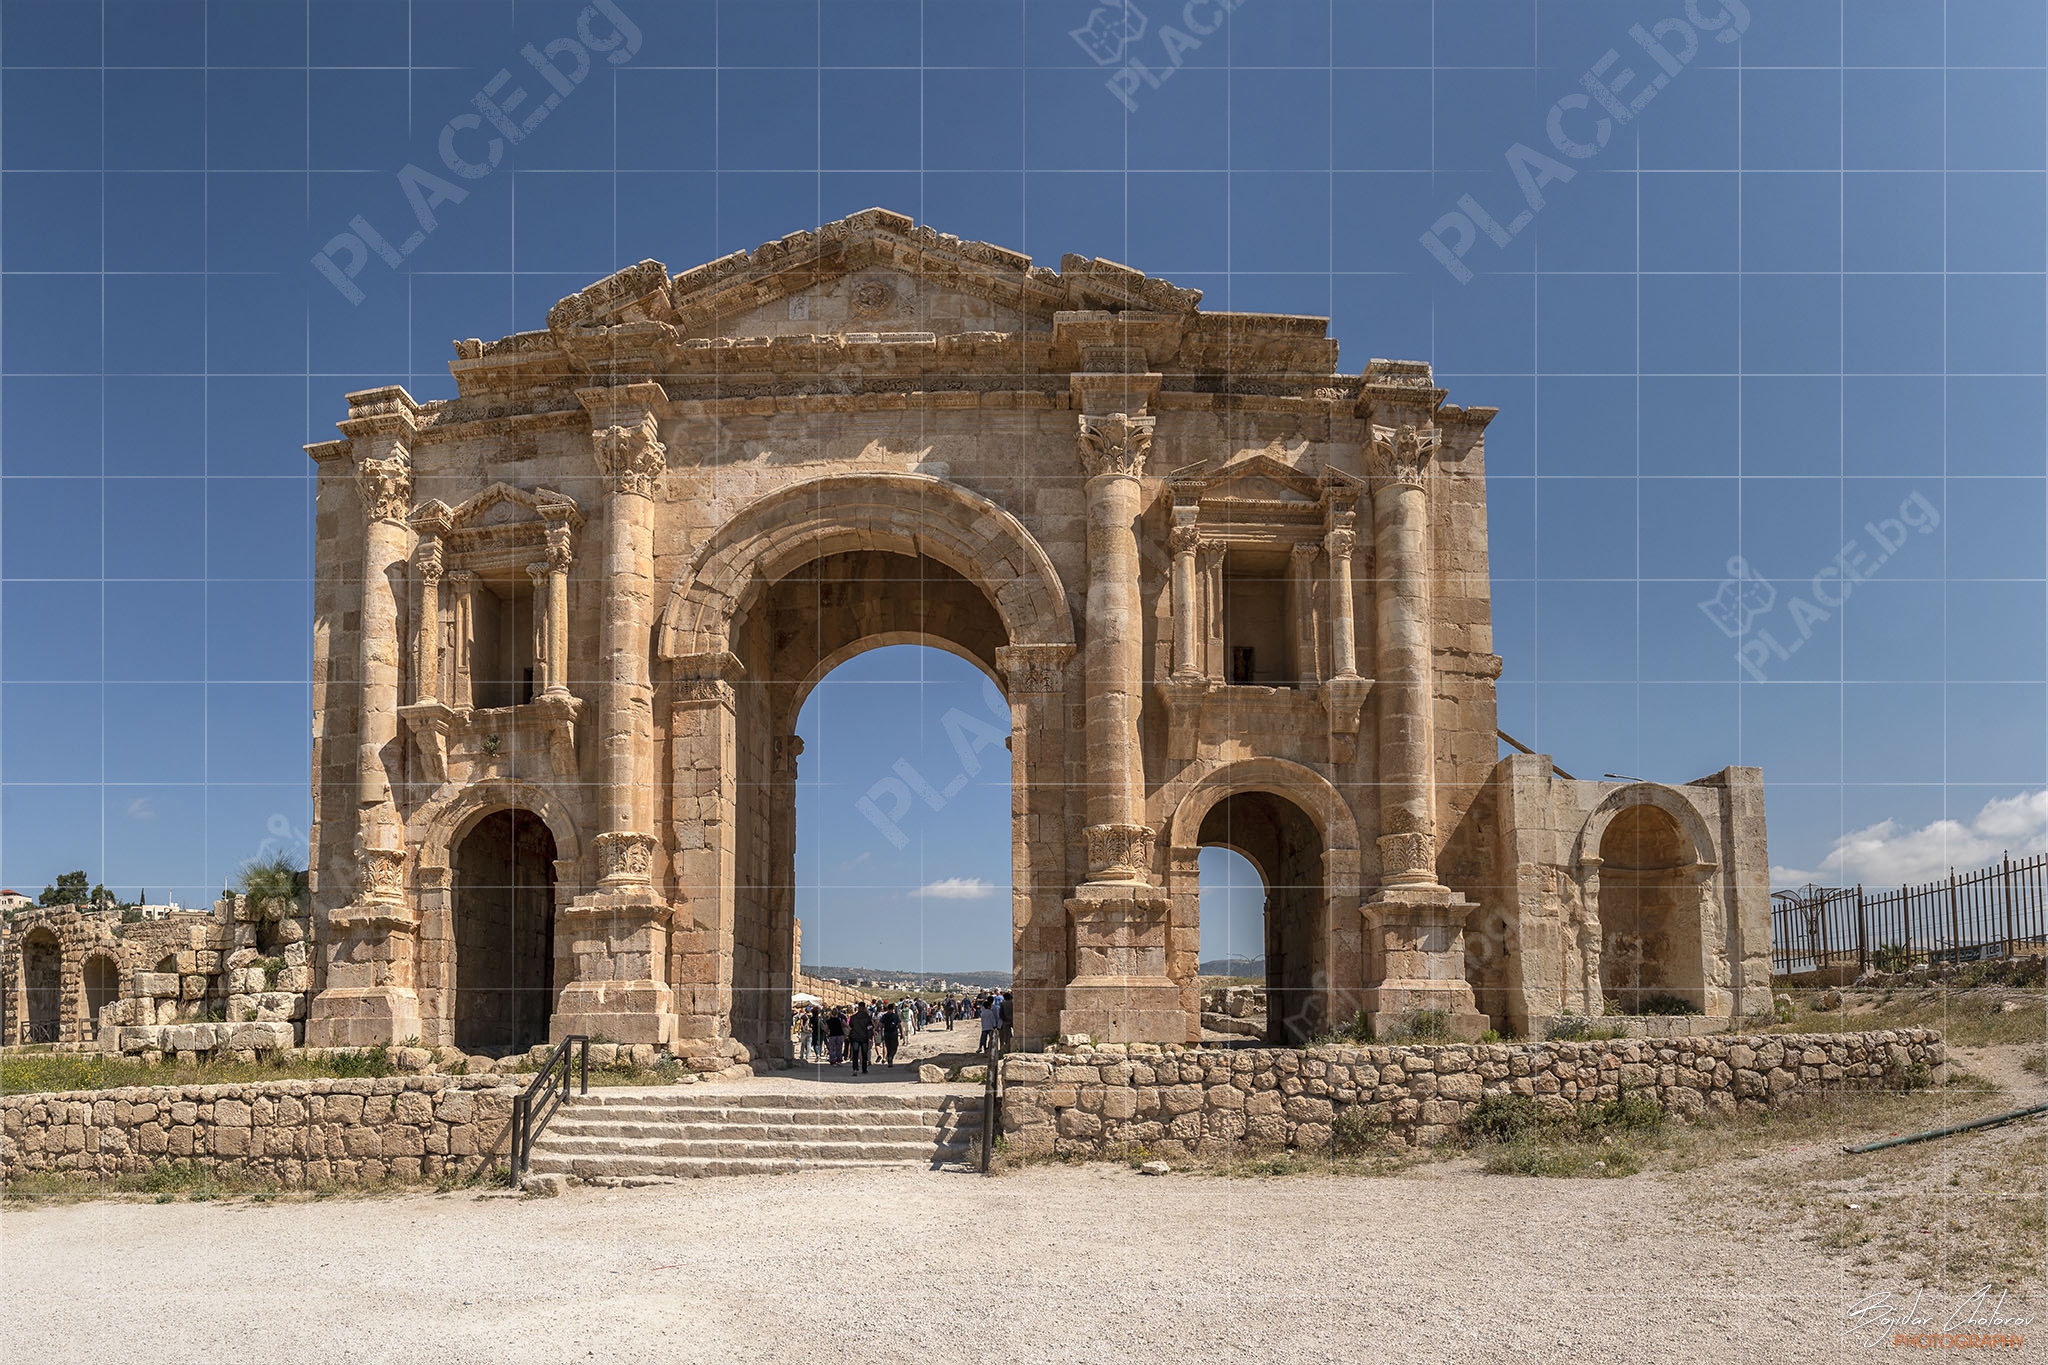 Jerash_Panorama1